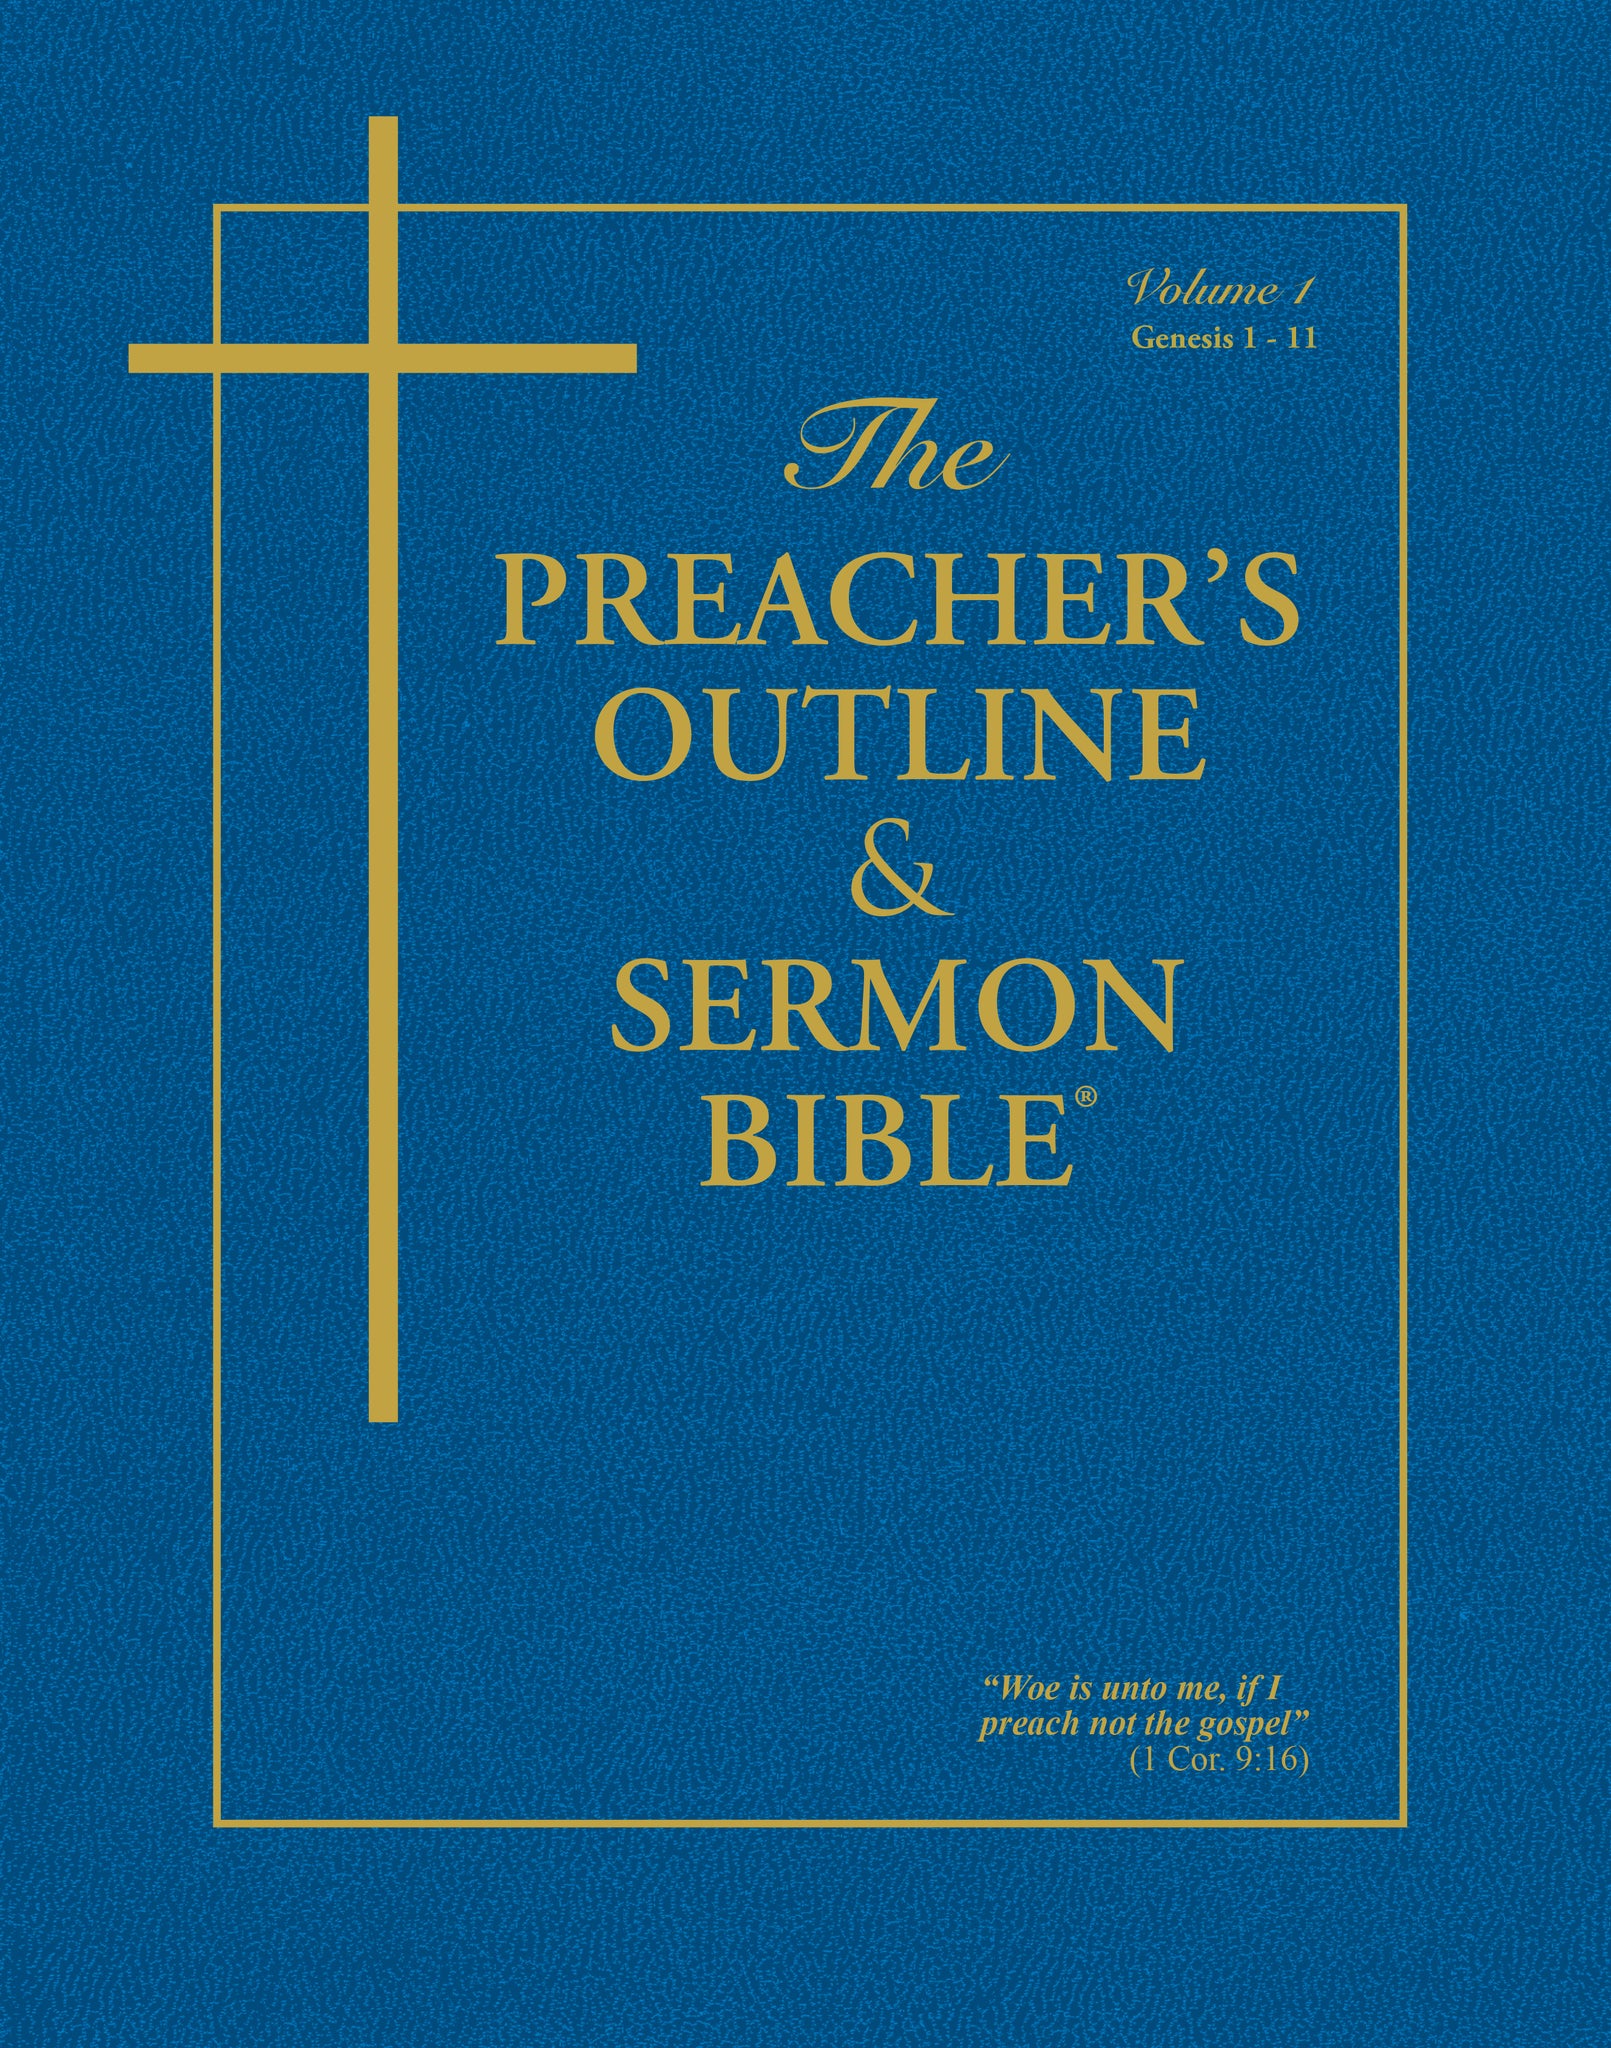 Bíblia do Pregador em Inglês - Preacher's Bible - King James